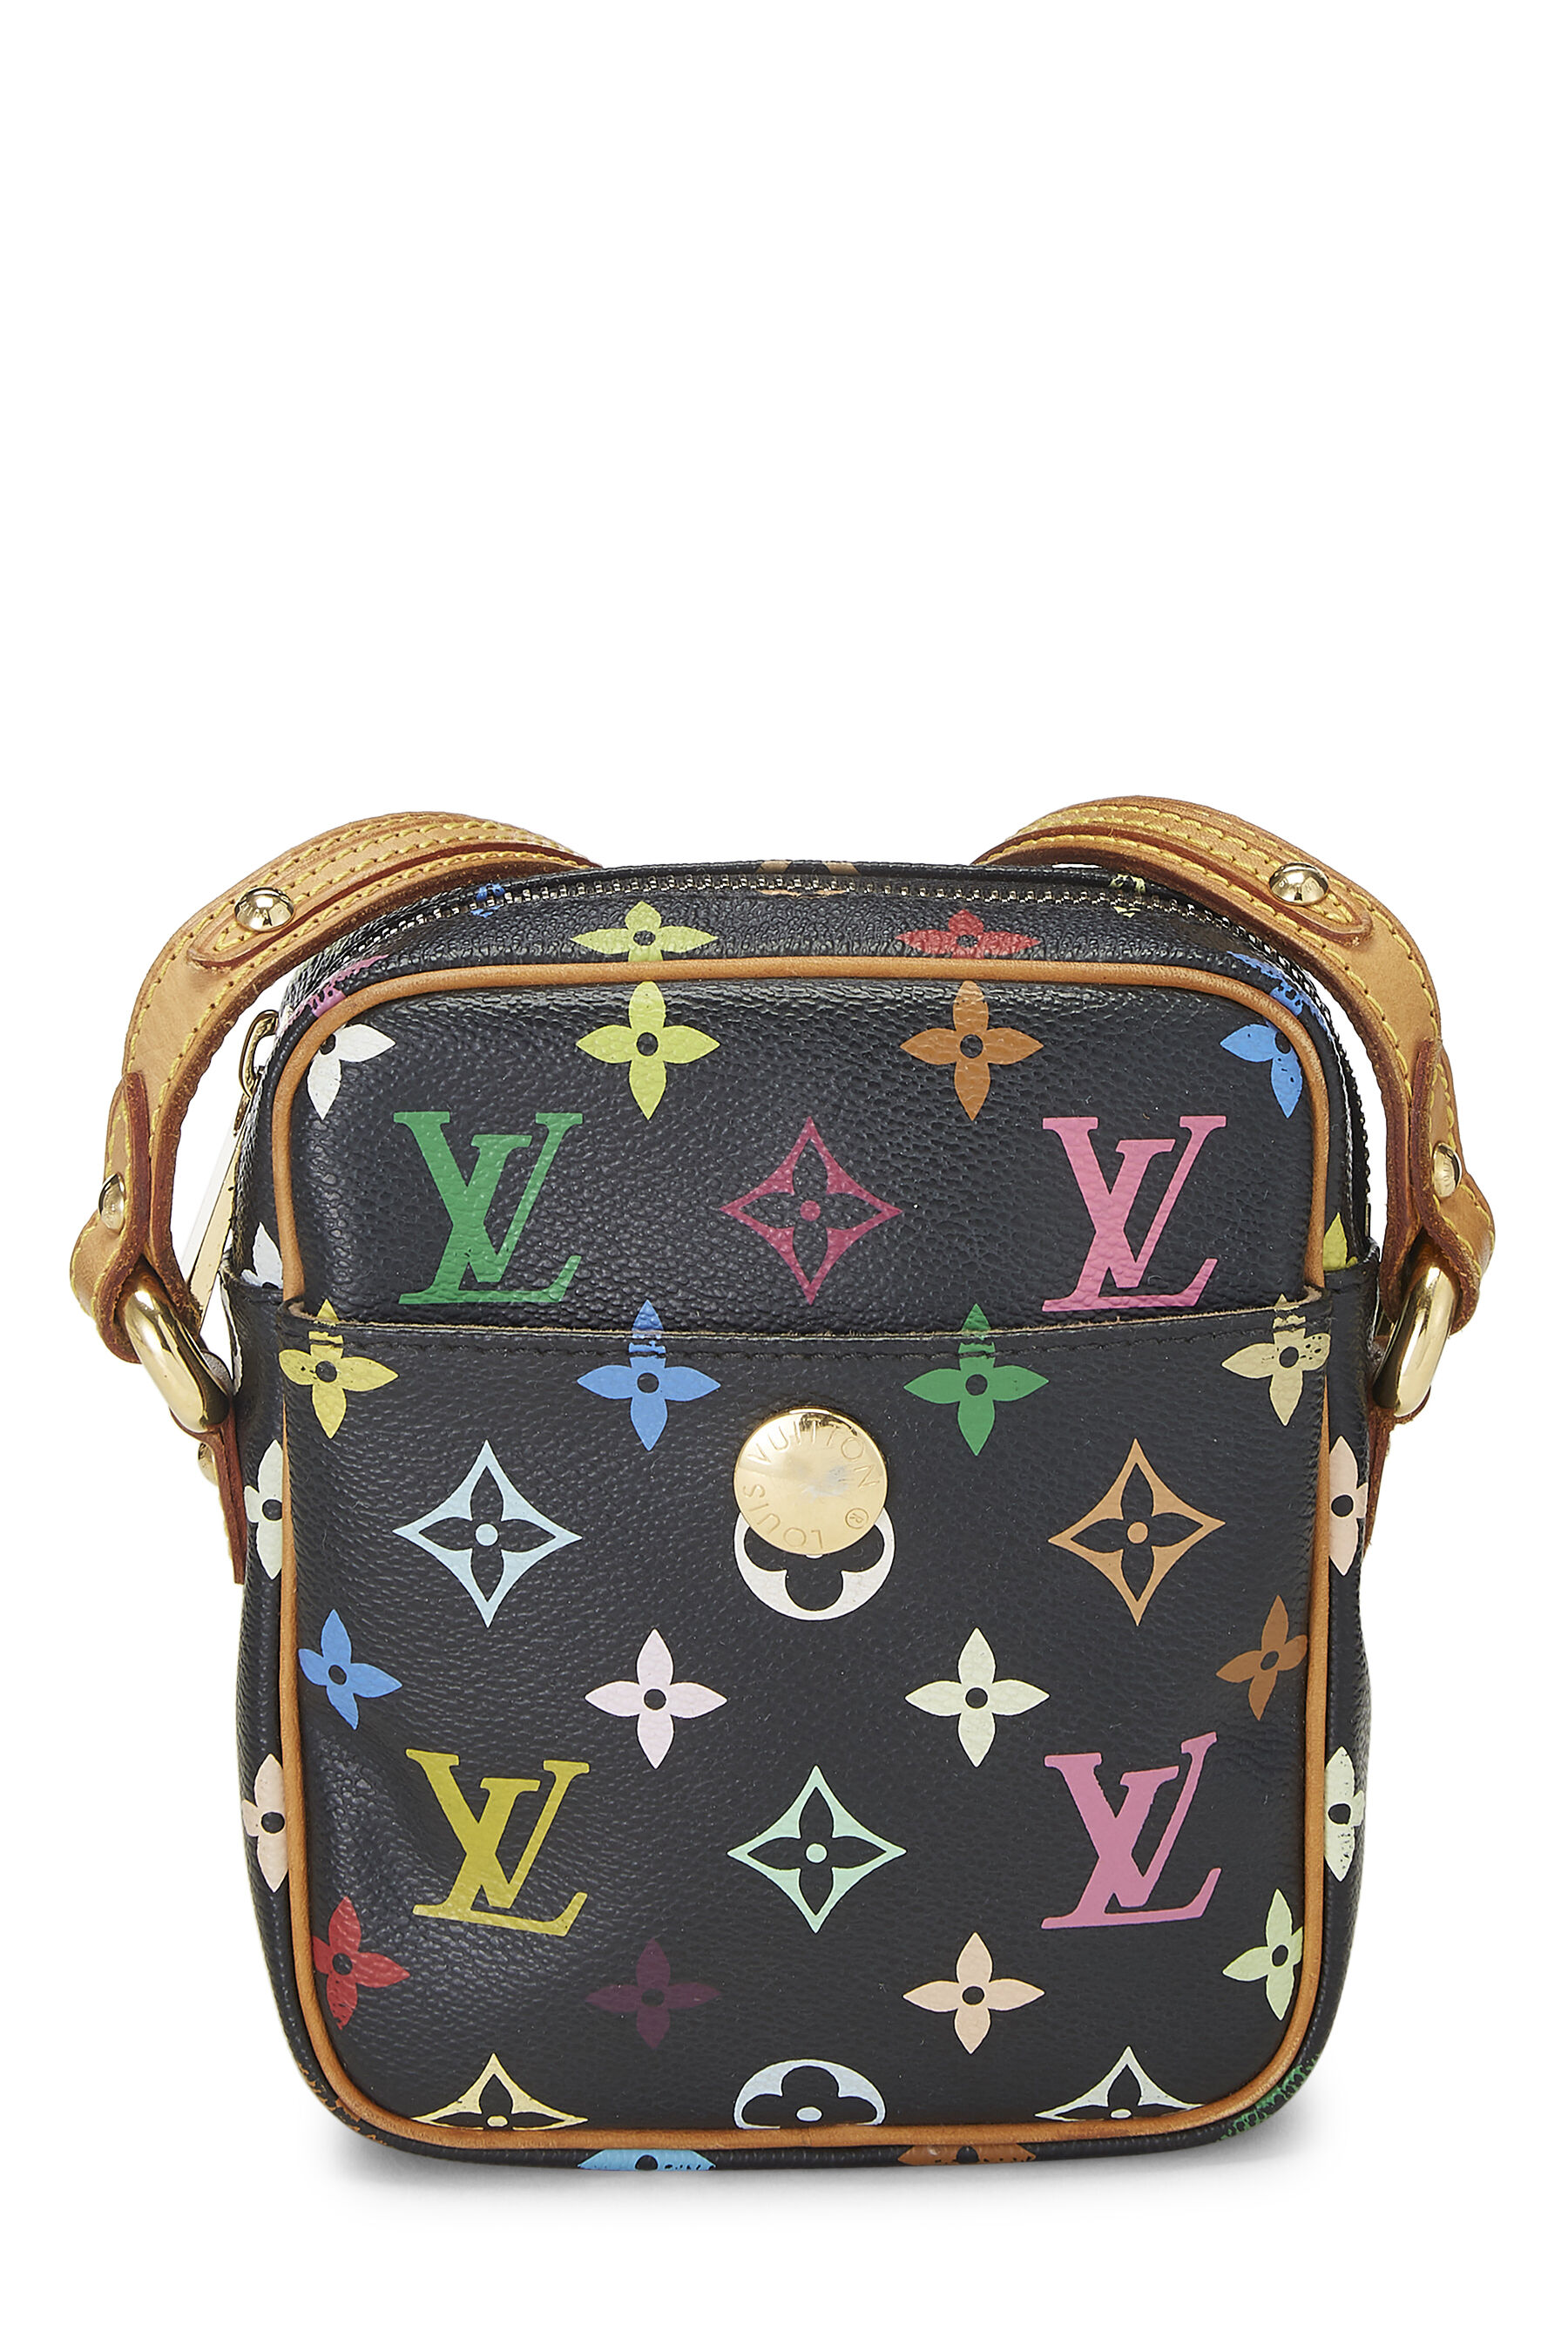 Louis Vuitton x Takashi Murakami Shoulder Bag Ribbon Lock Black